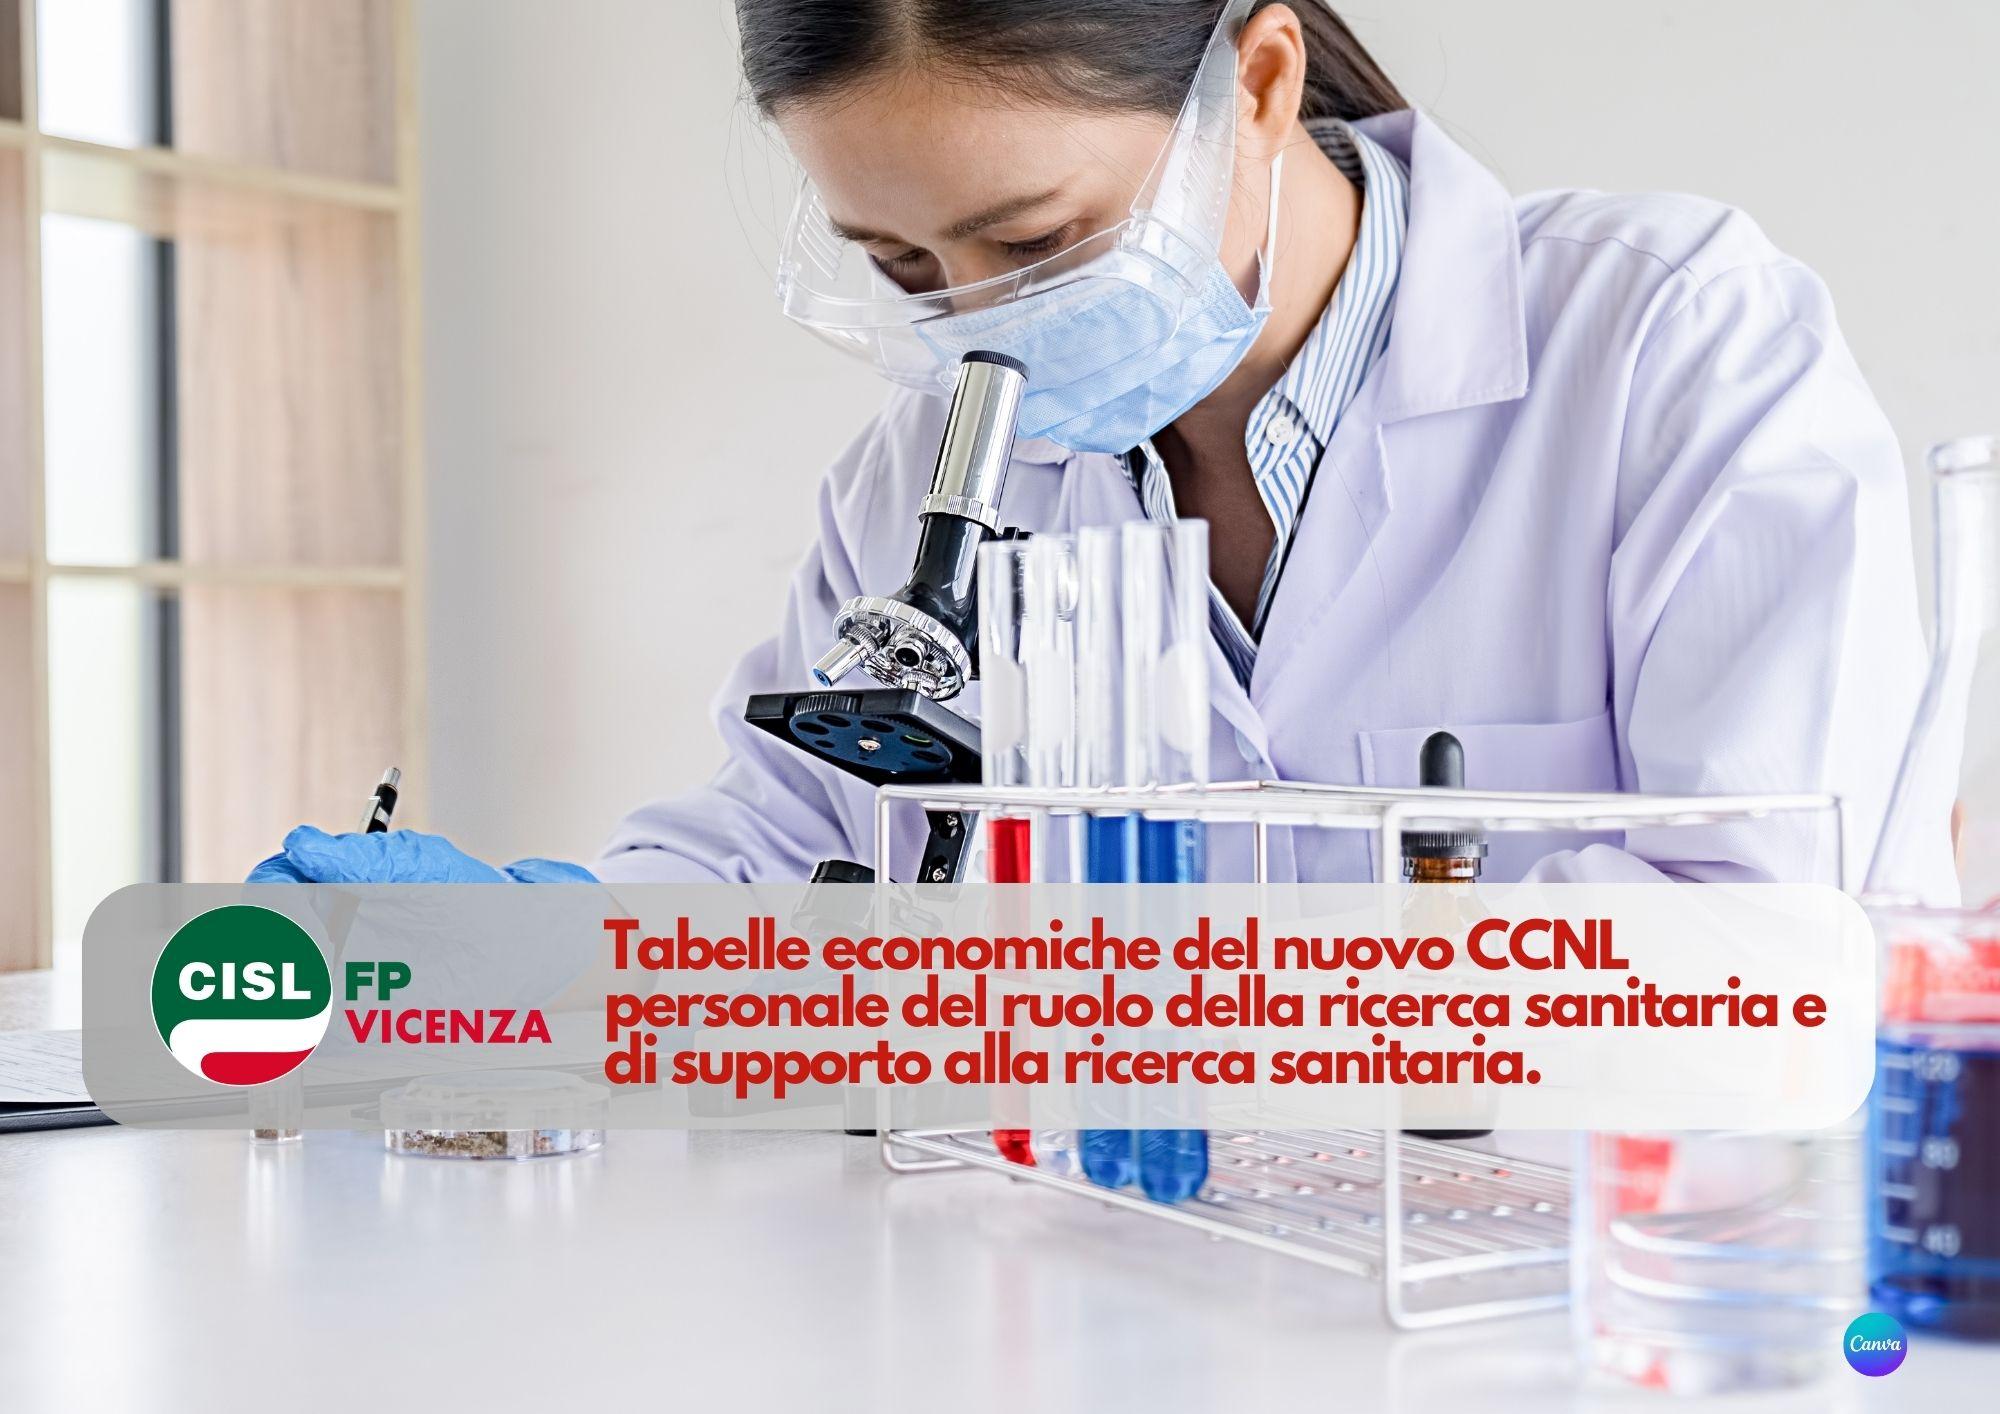 CISL FP Vicenza. Nuovo CCNL personale ruolo ricerca sanitaria e supporto. Tabelle economiche